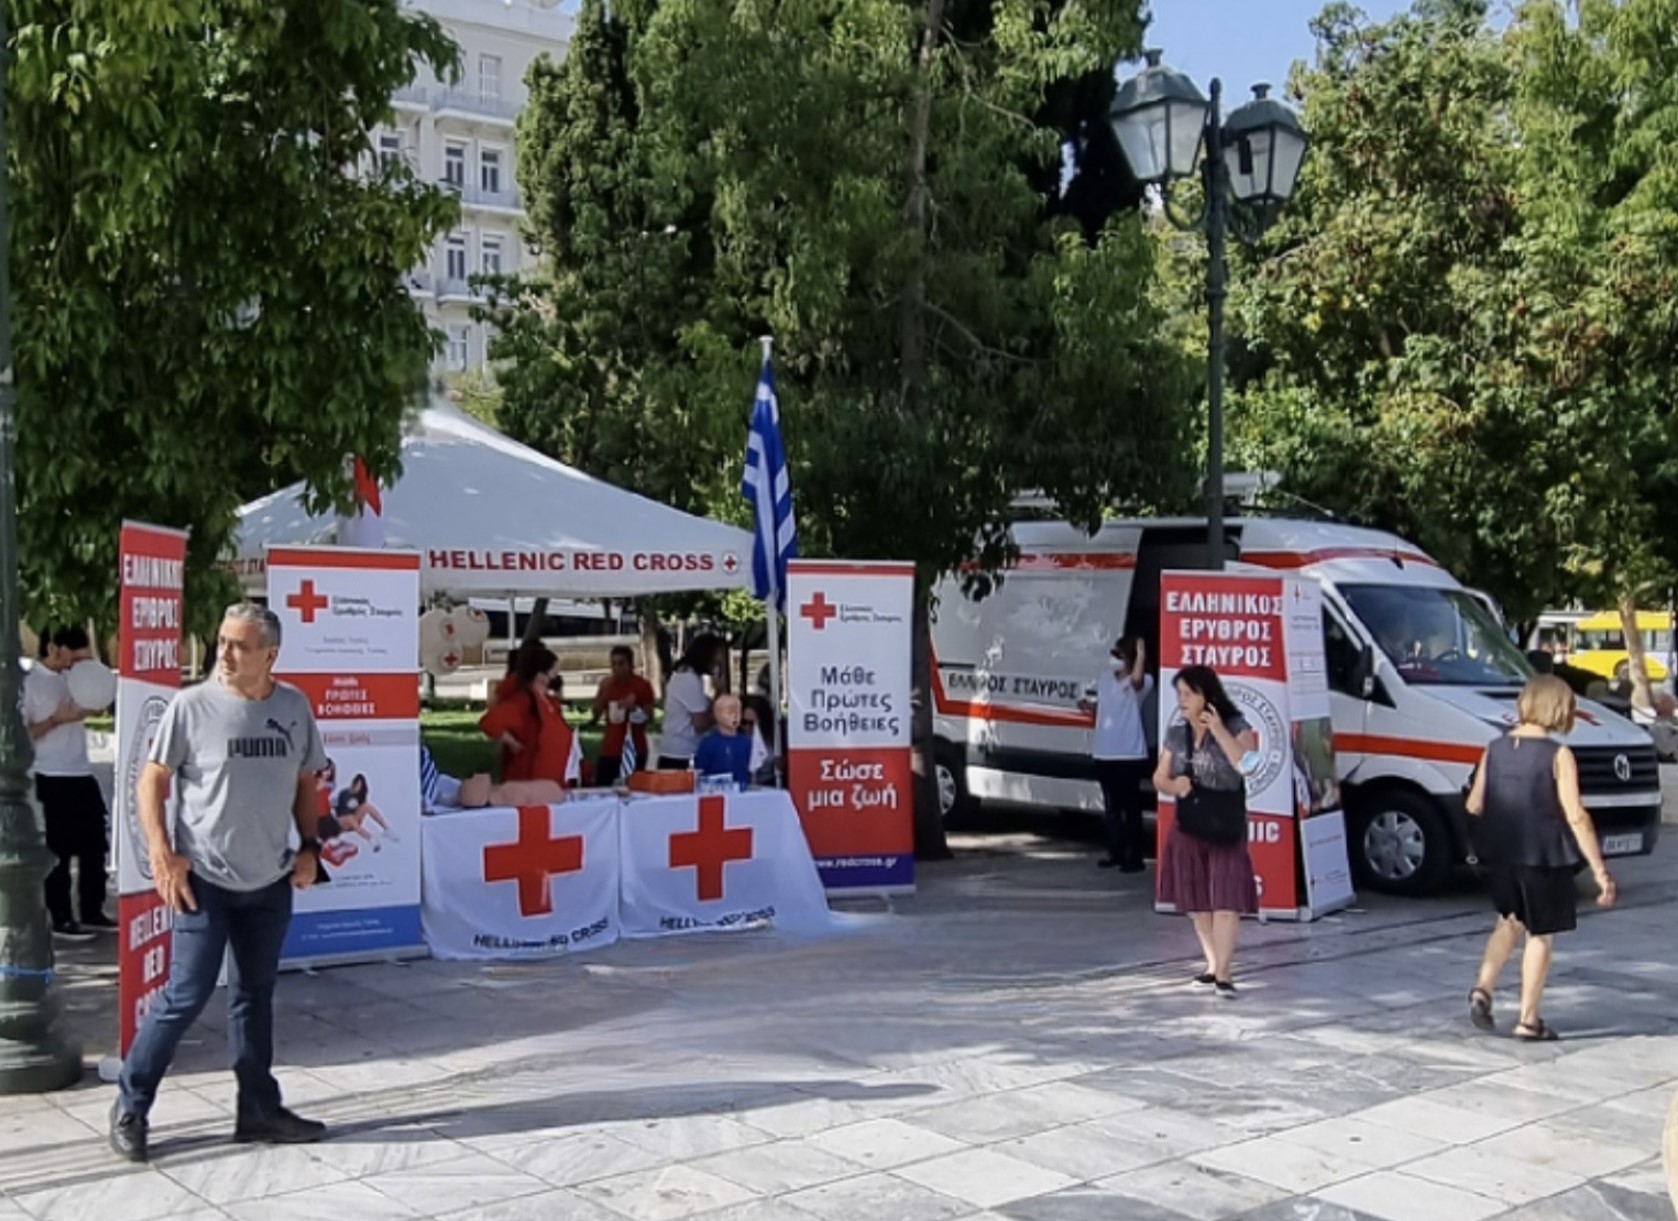 Ο Ελληνικός Ερυθρός Σταυρός εορτάζει την επέτειο ίδρυσής του με μεγάλη «πράσινη» δράση για μικρούς και μεγάλους στο κέντρο της Αθήνας (10/6, Πλατεία Καπνικαρέας)